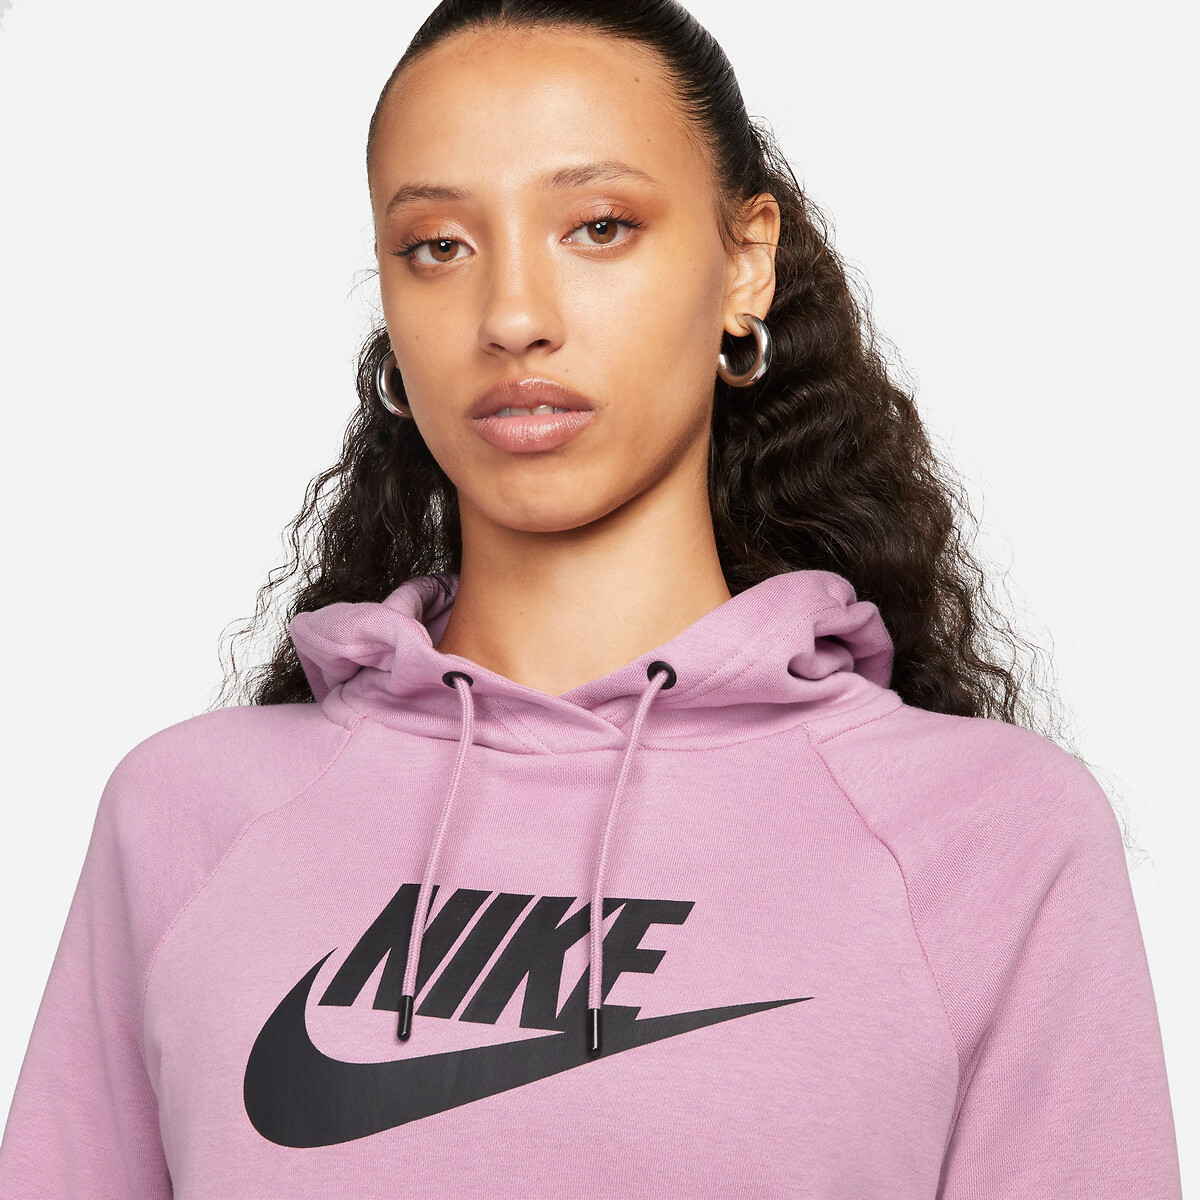 Diversen heelal vriendelijke groet Hoodie met logo en centrale zak roze Nike | La Redoute